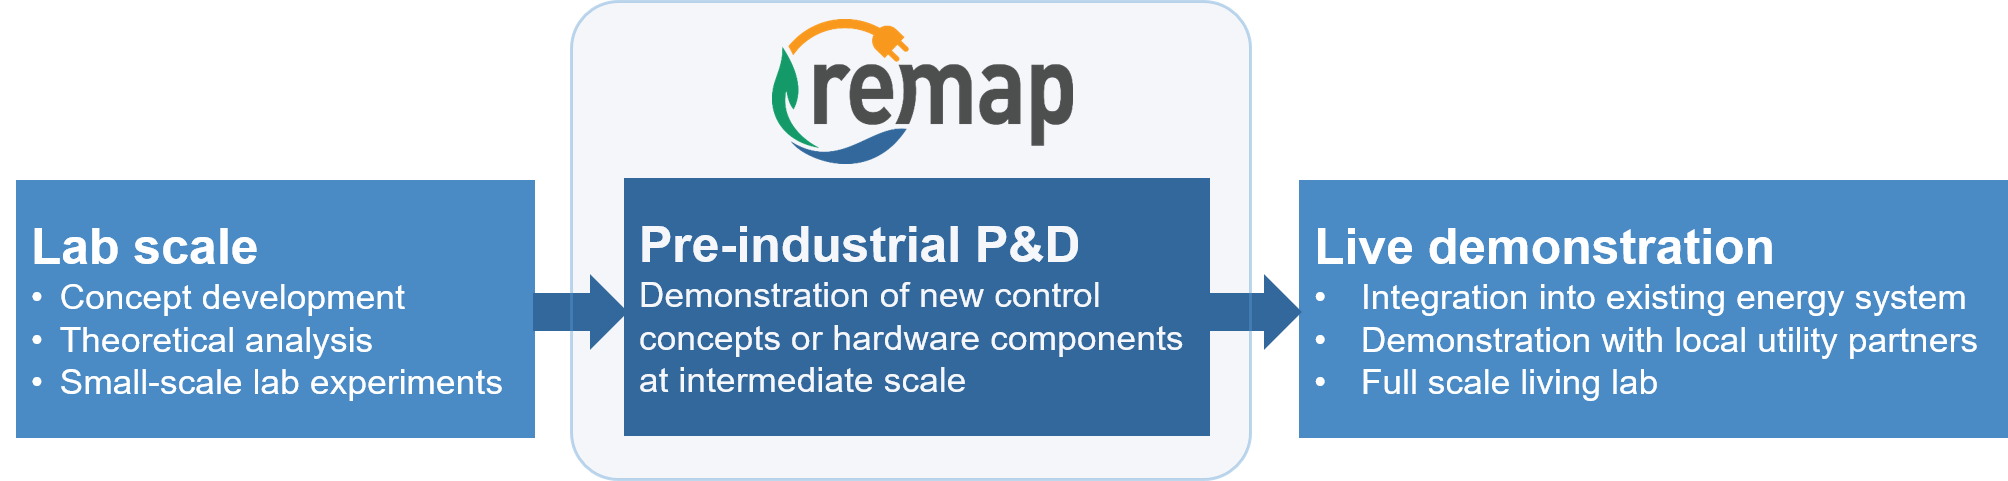 Figure: ReMaP Pre-industrial P&D